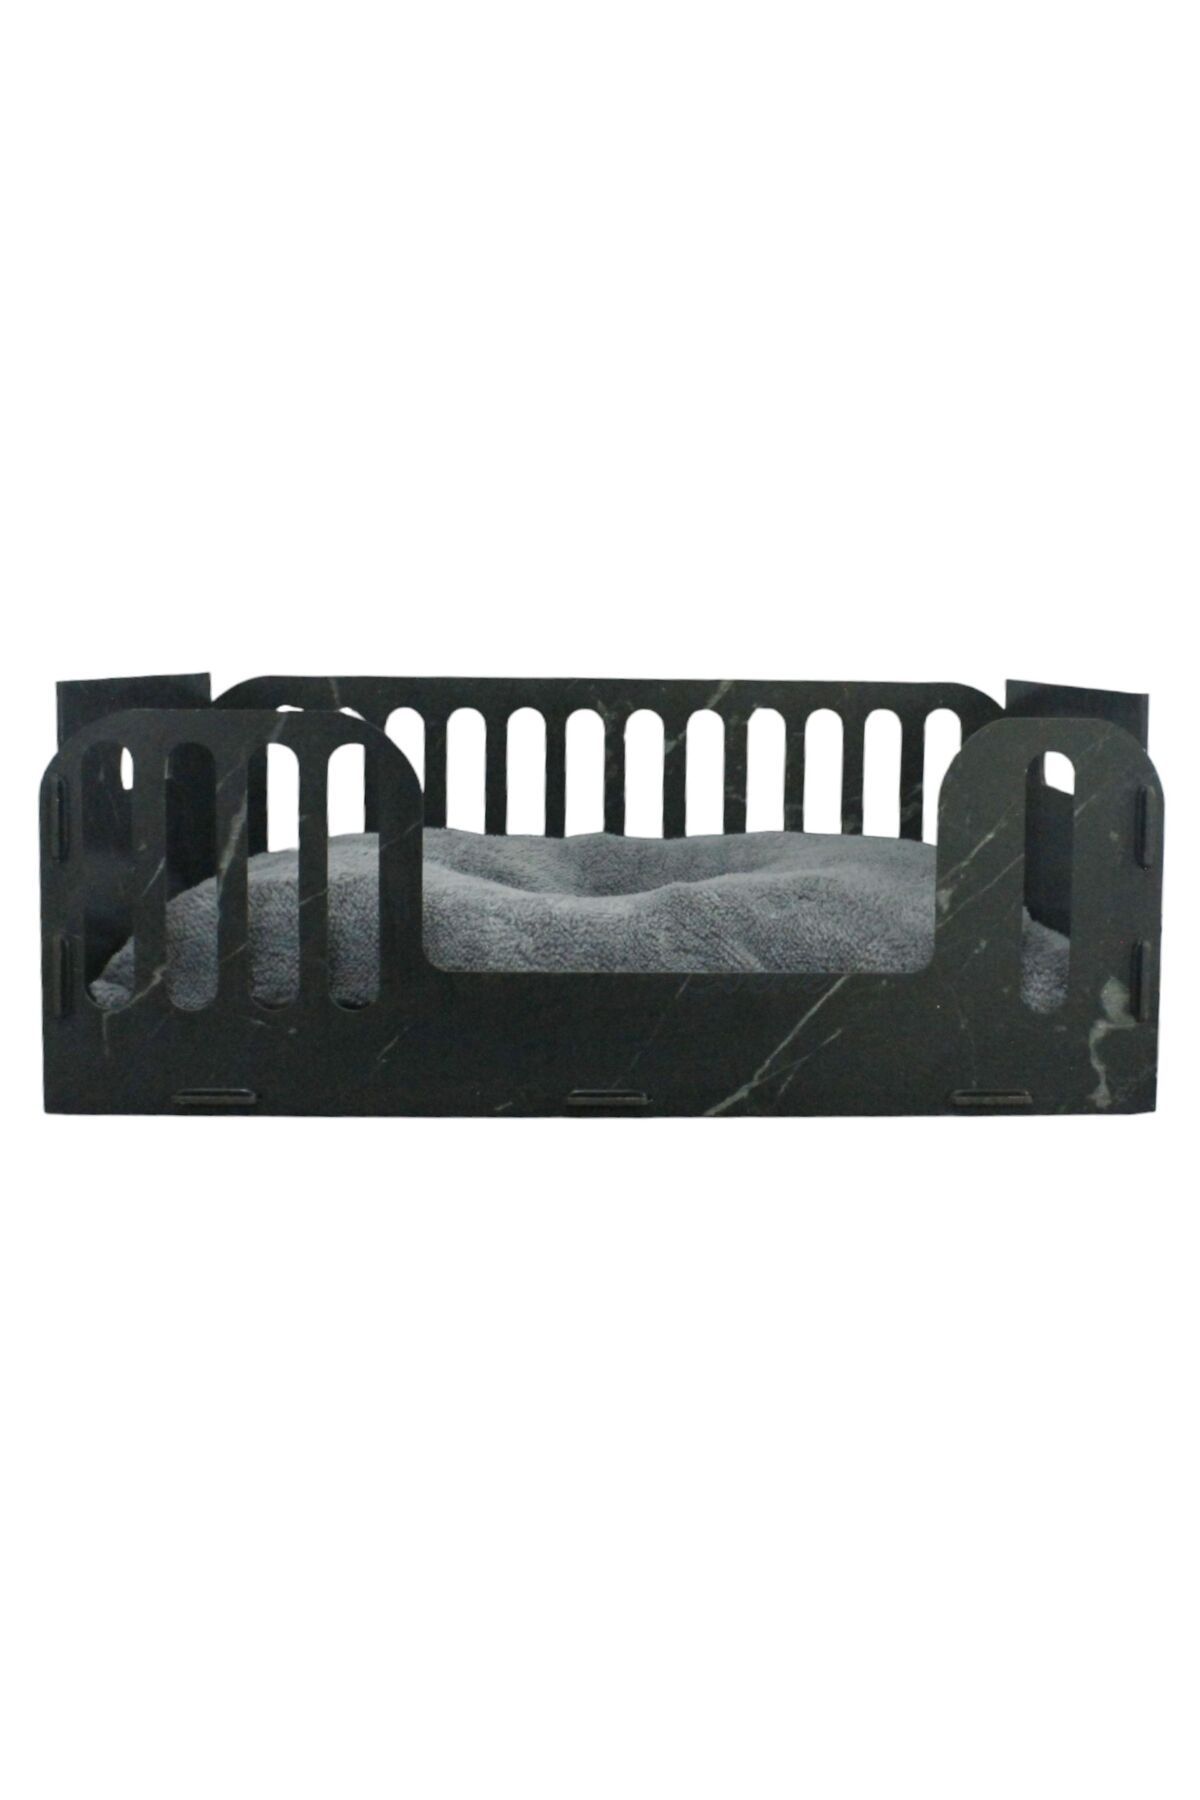 Evene Büyük Kedi Yatağı Dekoratif Ahşap Dayanıklı Siyah Mermer Renk Model 5